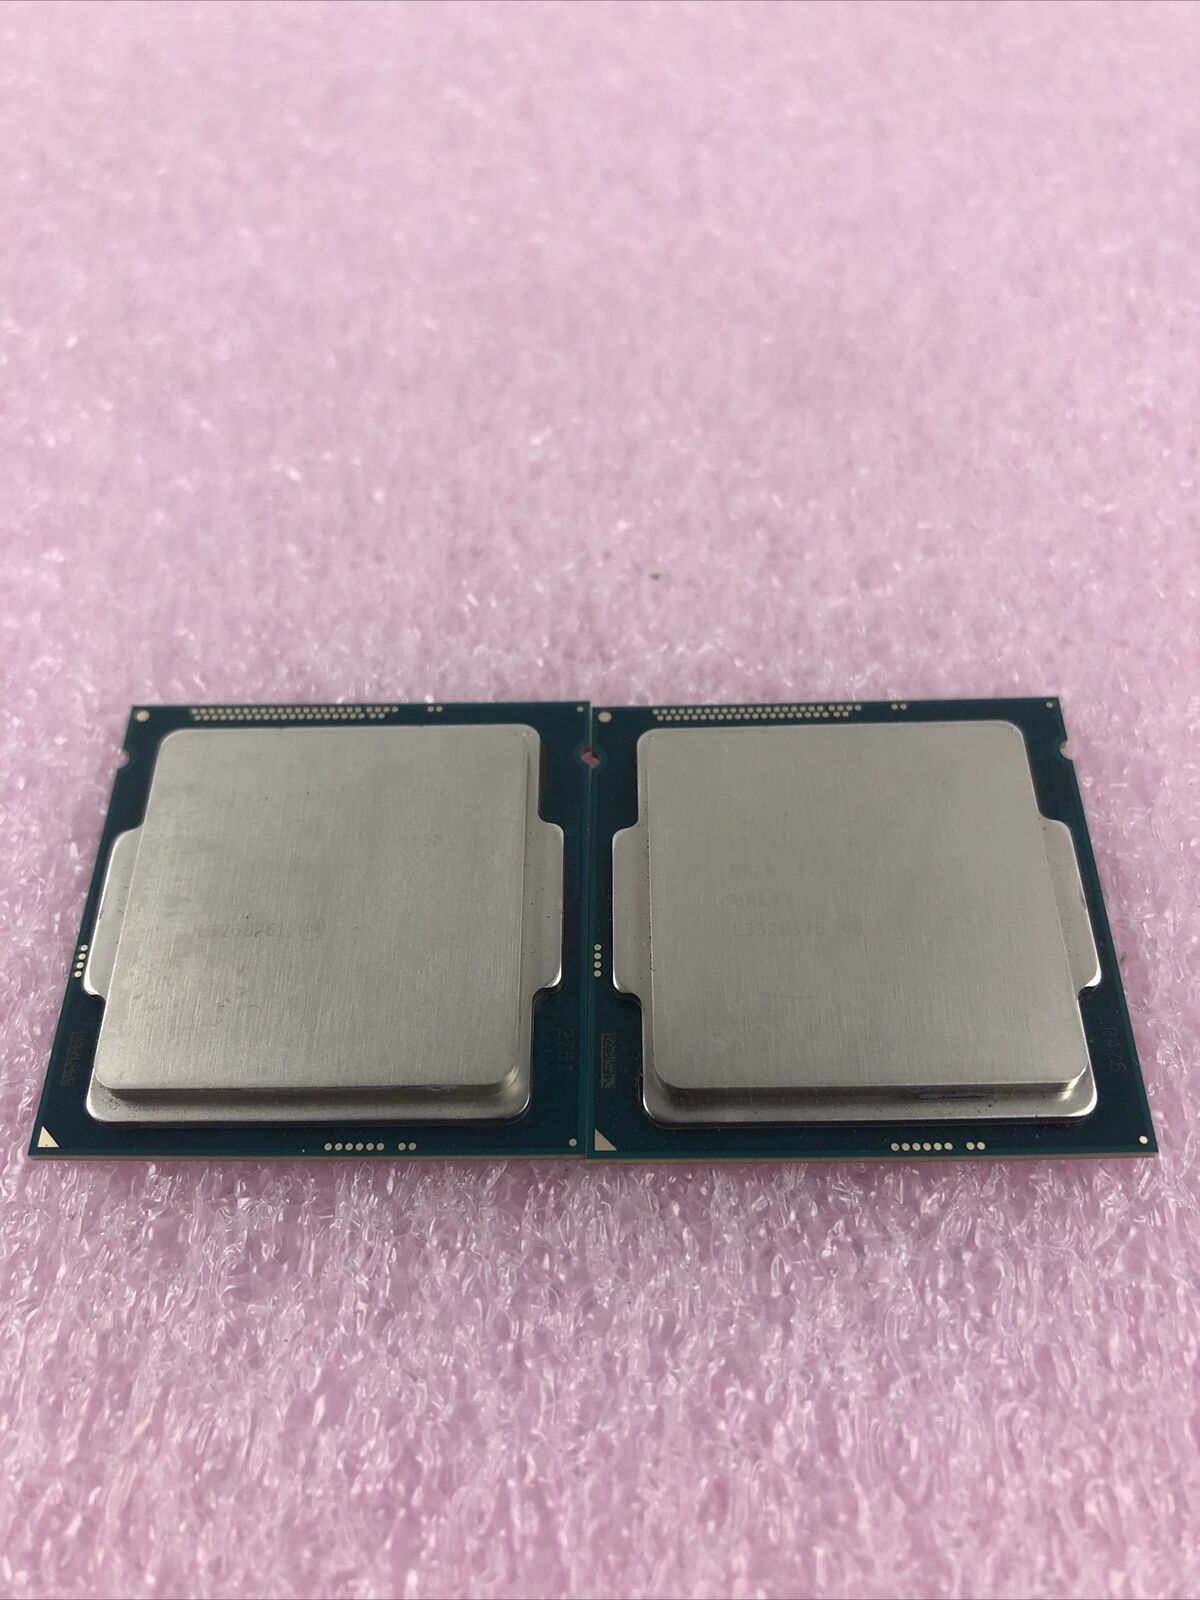 Lot of 2 Intel Core i3-4130 3.4GHz SR1NP Processor